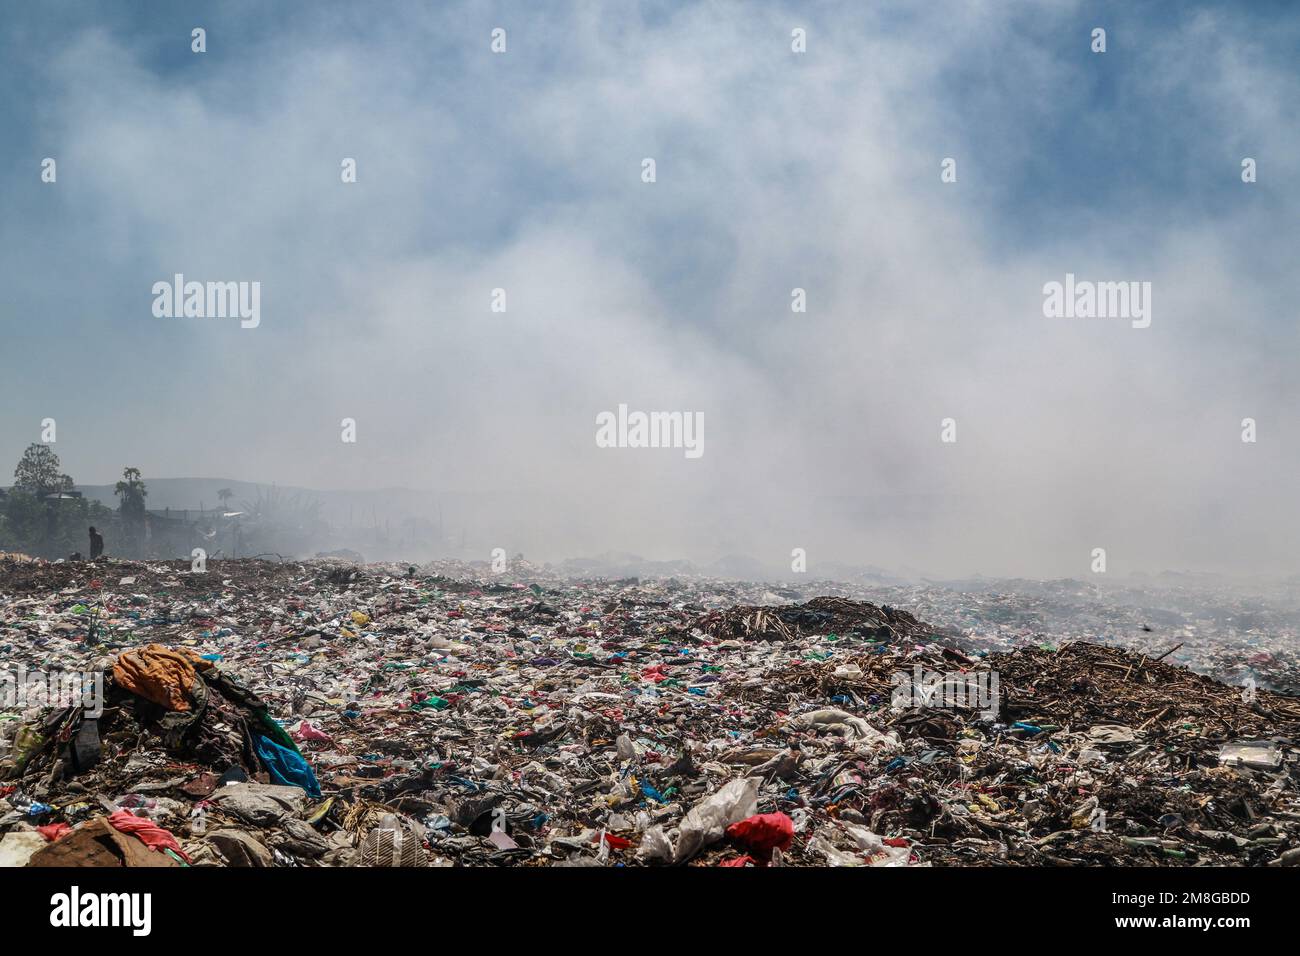 Müllsammler sammeln Abfälle, um sie in starkem Rauch zu recyceln, indem sie Müll auf dem Hauptlagerplatz von Nakuru verbrennen. Da Abfälle selten getrennt und stark mit allen Arten von Abfall vermischt werden, kann das Verbrennen potenziell giftige Dämpfe erzeugen, die ein Problem für die öffentliche Gesundheit darstellen und auch zum Klimawandel beitragen können. Gemeinden, die in der Nähe von Mülldeponien arbeiten und leben, wo Müll offen verbrannt wird, sind dem Risiko von Atemwegserkrankungen und Krebs ausgesetzt. Frauen, die diesen Dämpfen ausgesetzt sind, können unter reproduktiven Gesundheitsproblemen leiden. (Foto: James Wakibia/SOPA Images/Sipa USA) Stockfoto